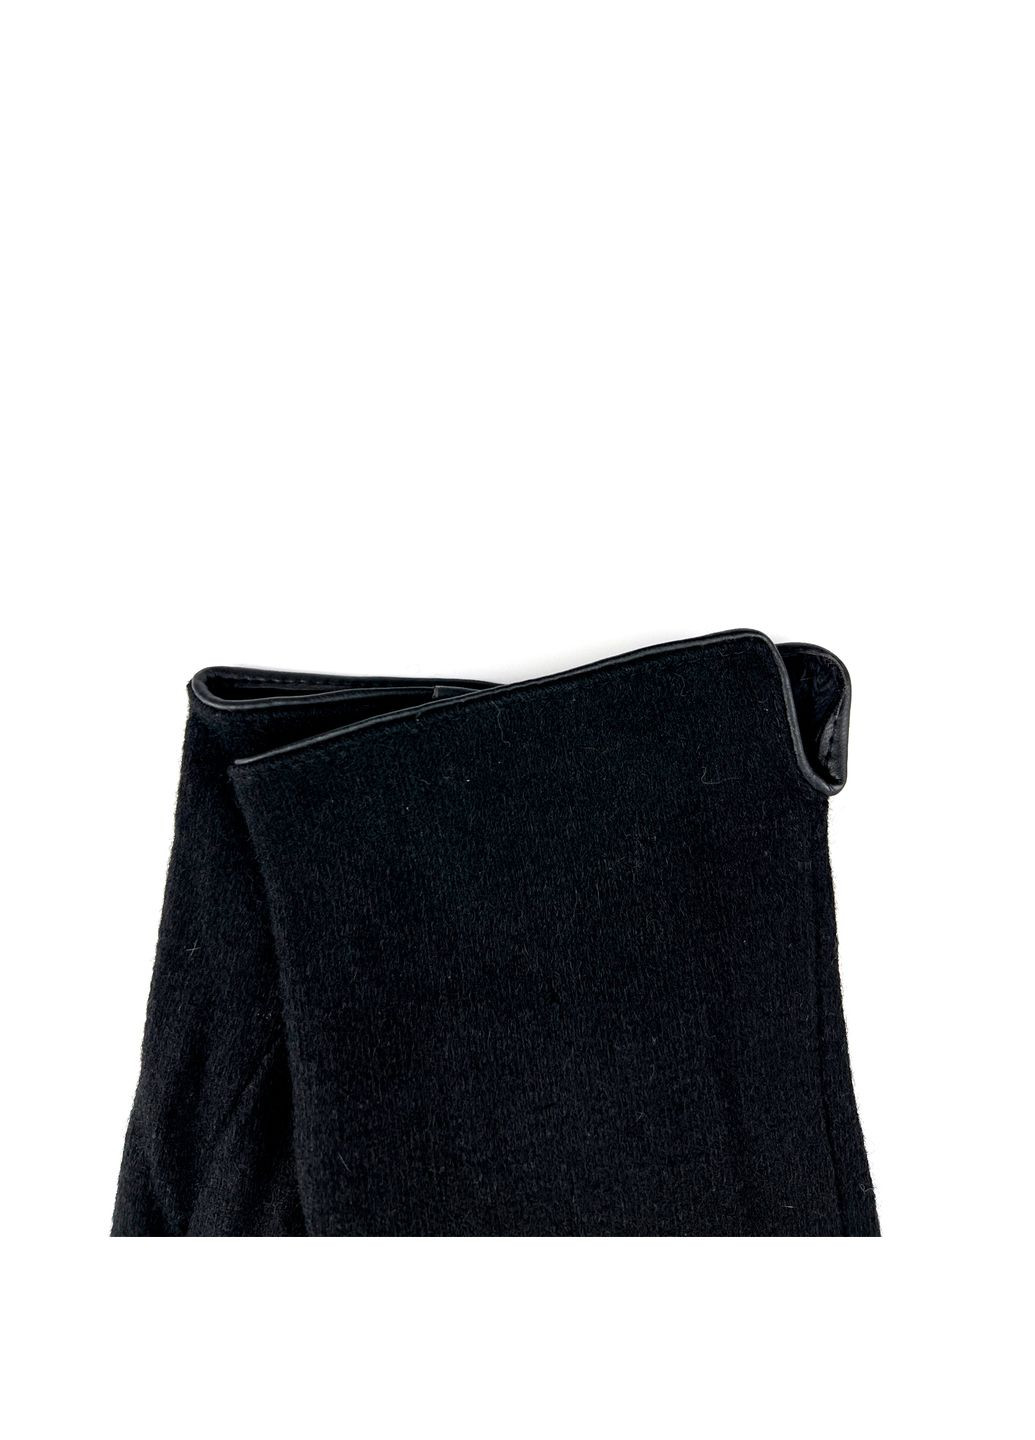 Перчатки Smart Touch мужские шерсть черные 960-375 LuckyLOOK 960-375m (289360846)